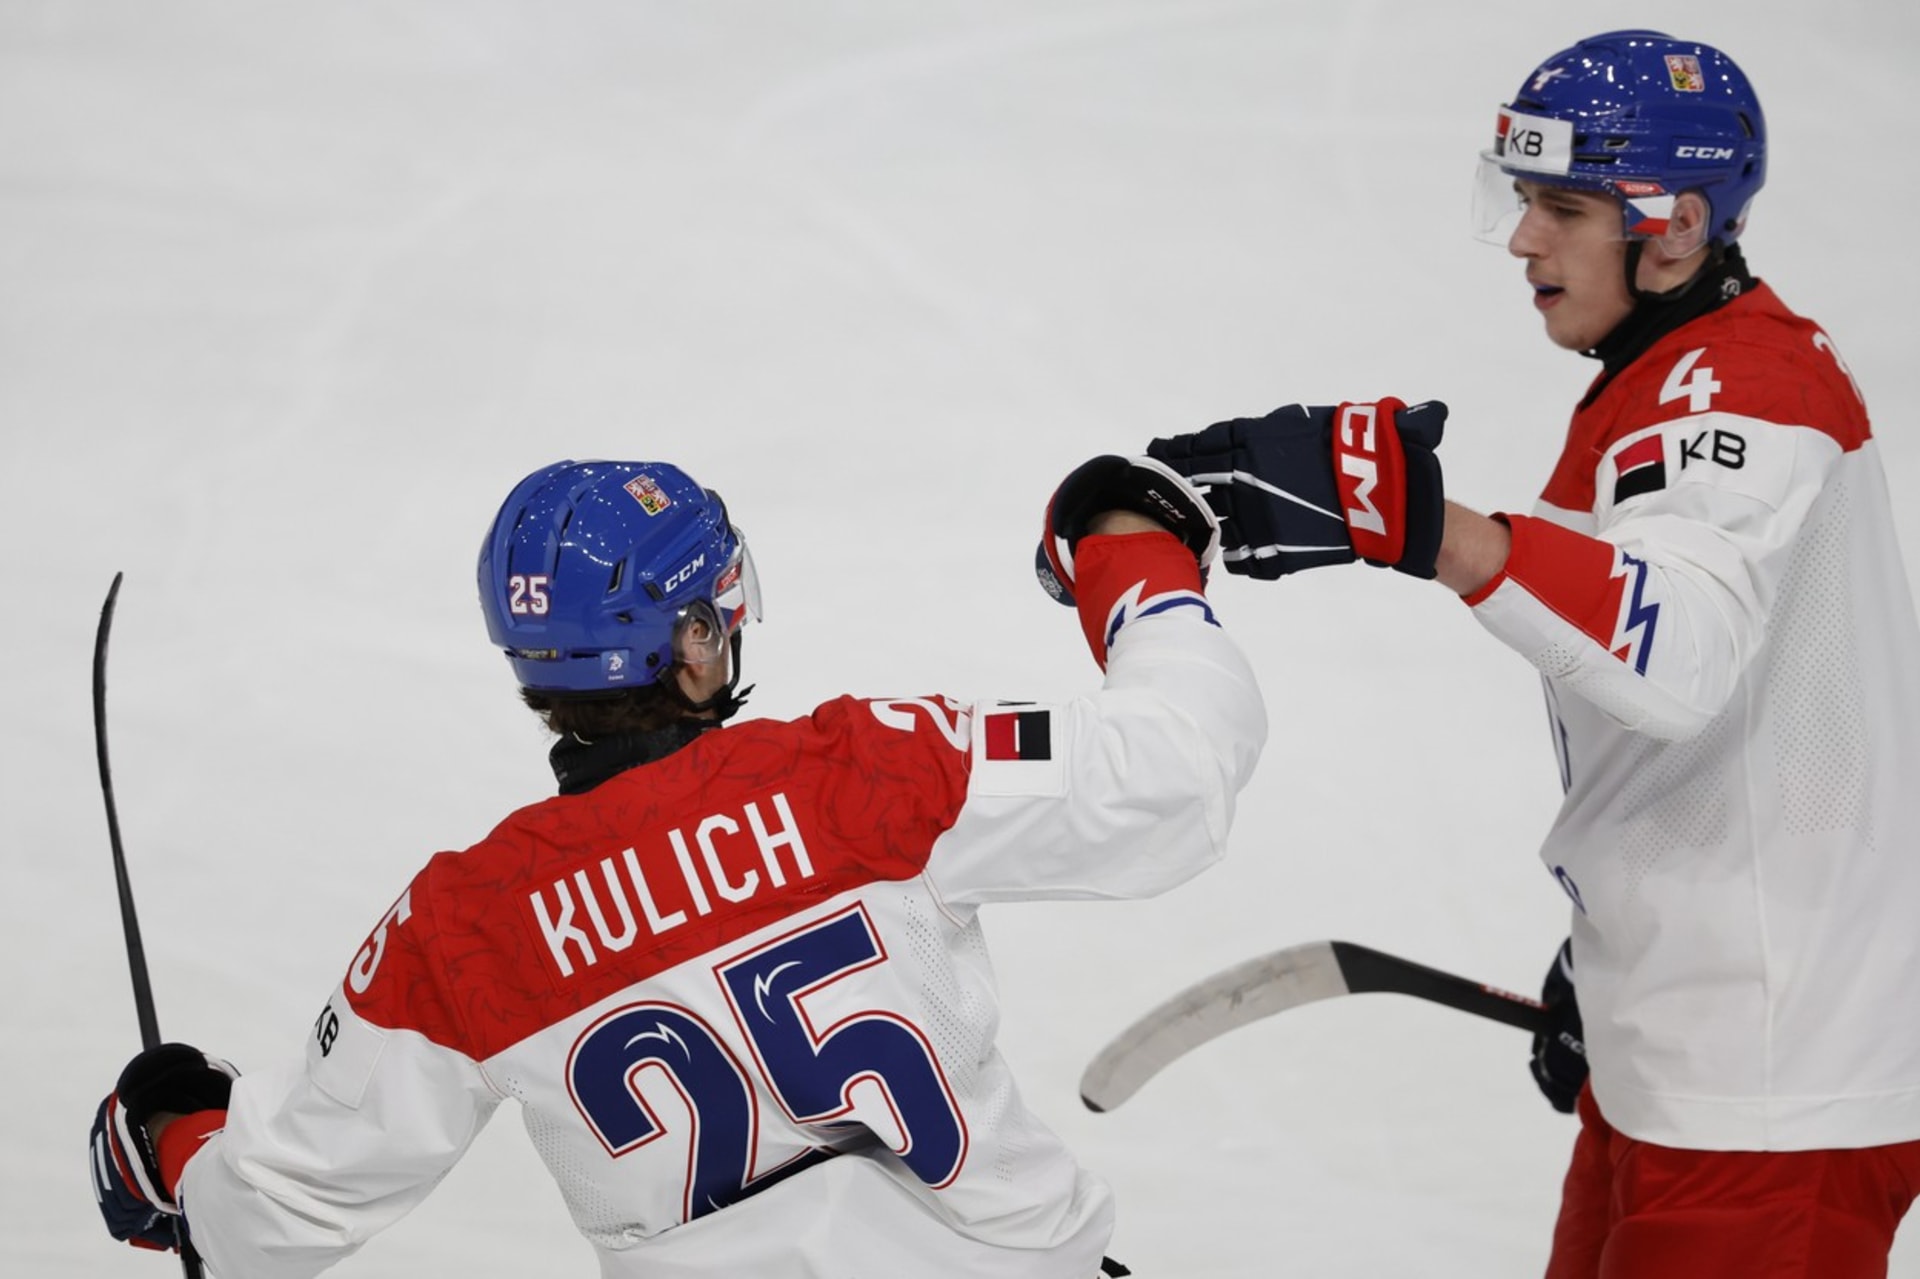 Čeští hokejisté na mistrovství světa dvacítek